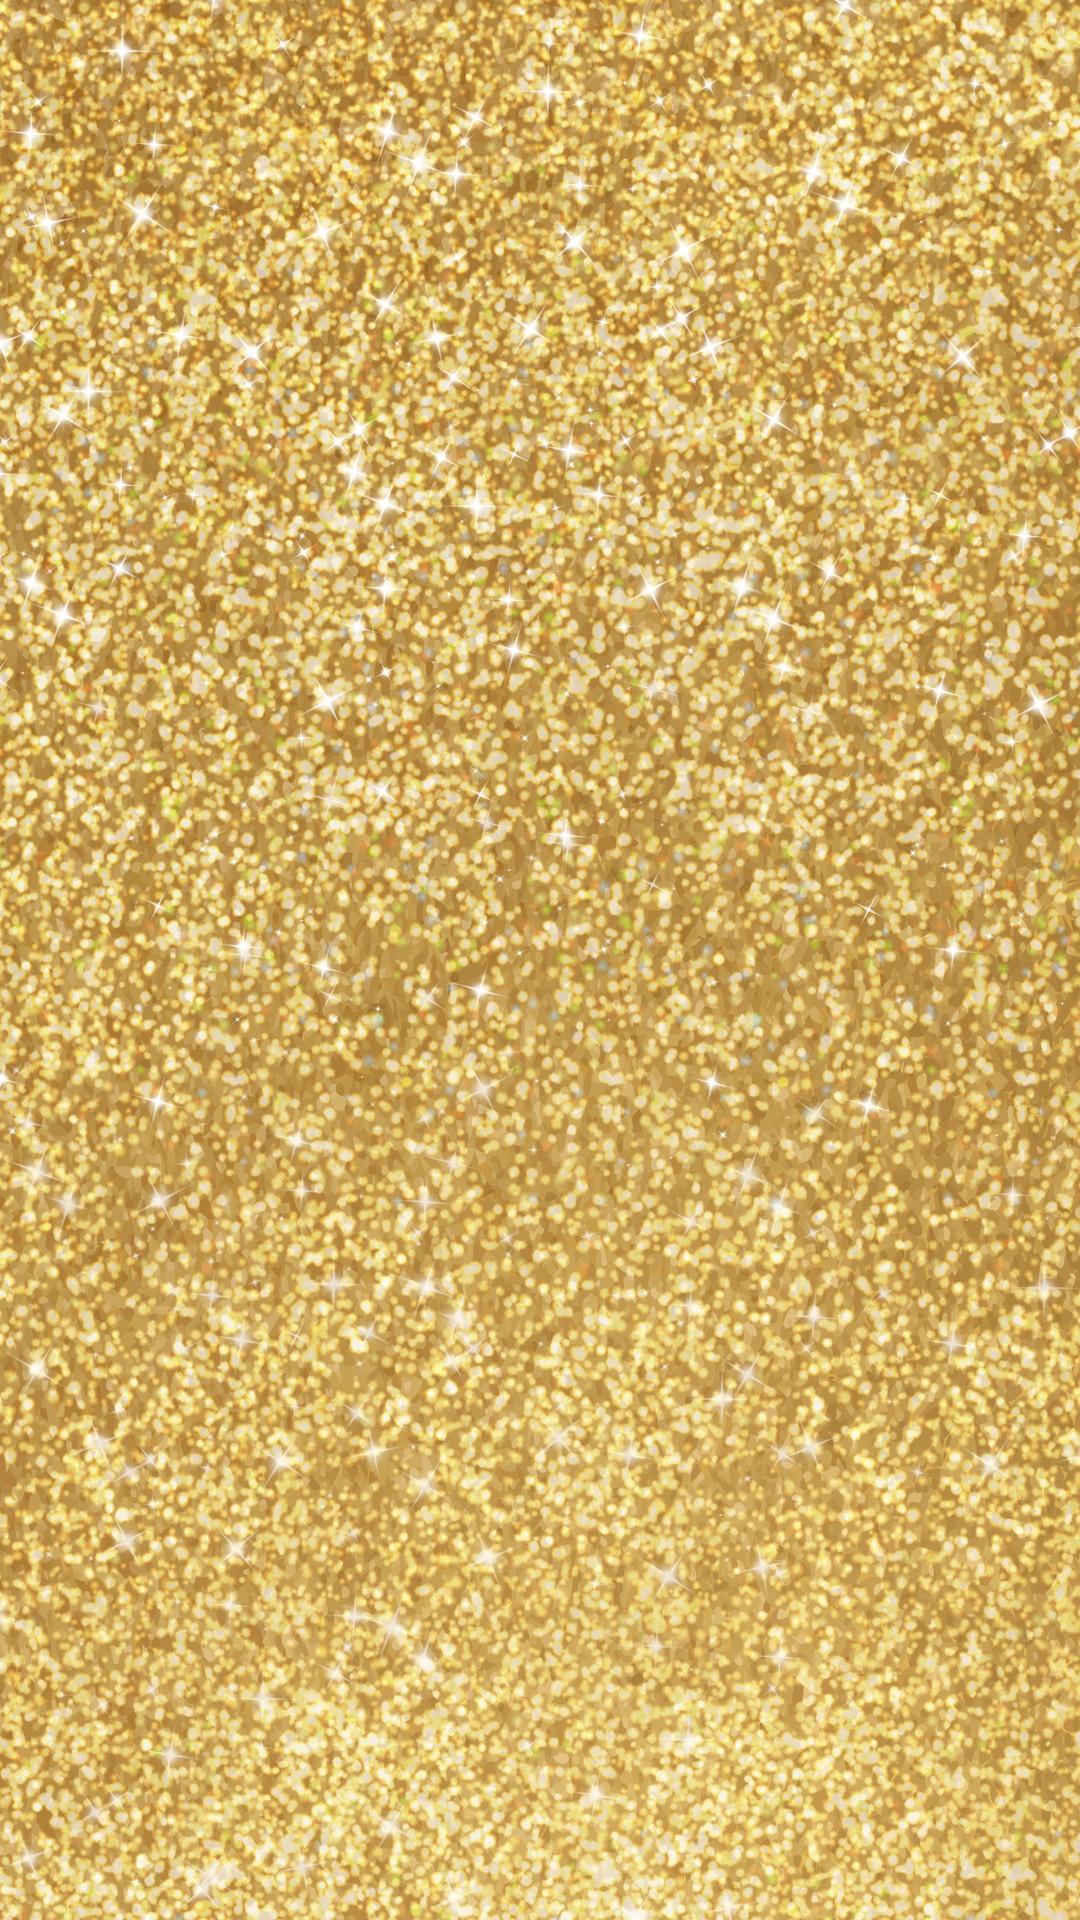 rose gold sparkle background hd mandela